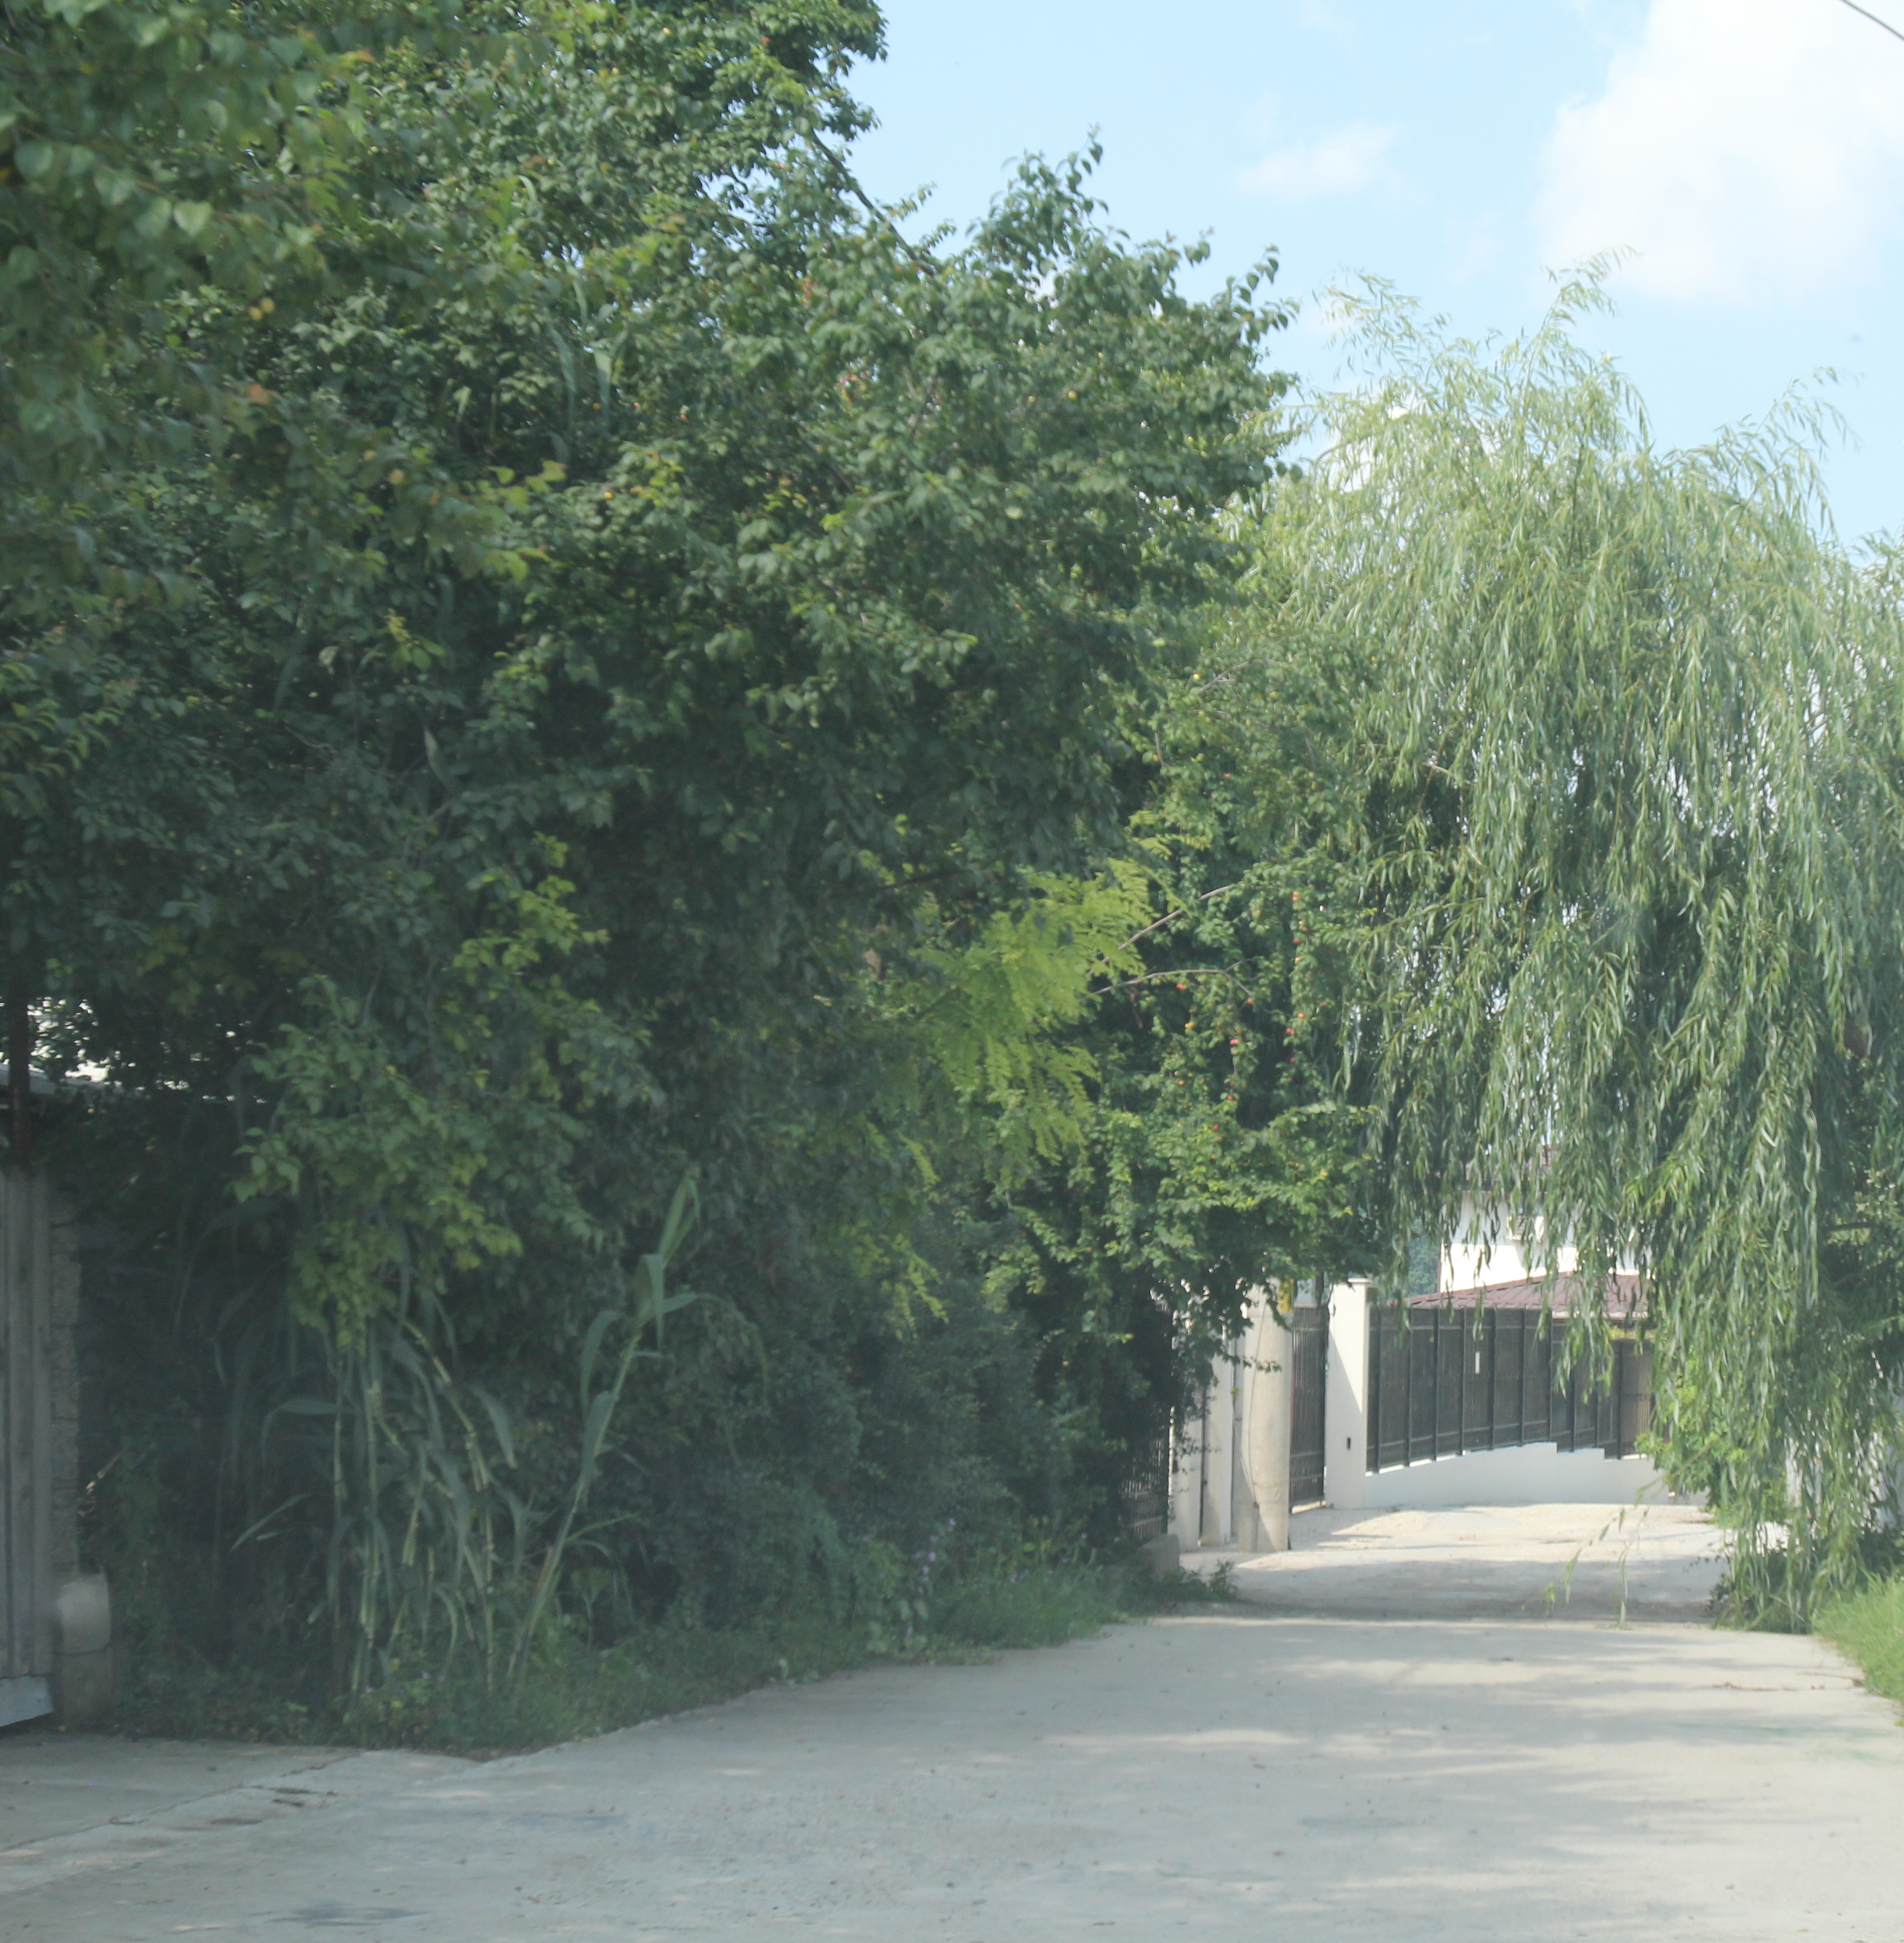 Strada pe care este situata vila lui Baranga duce la lac